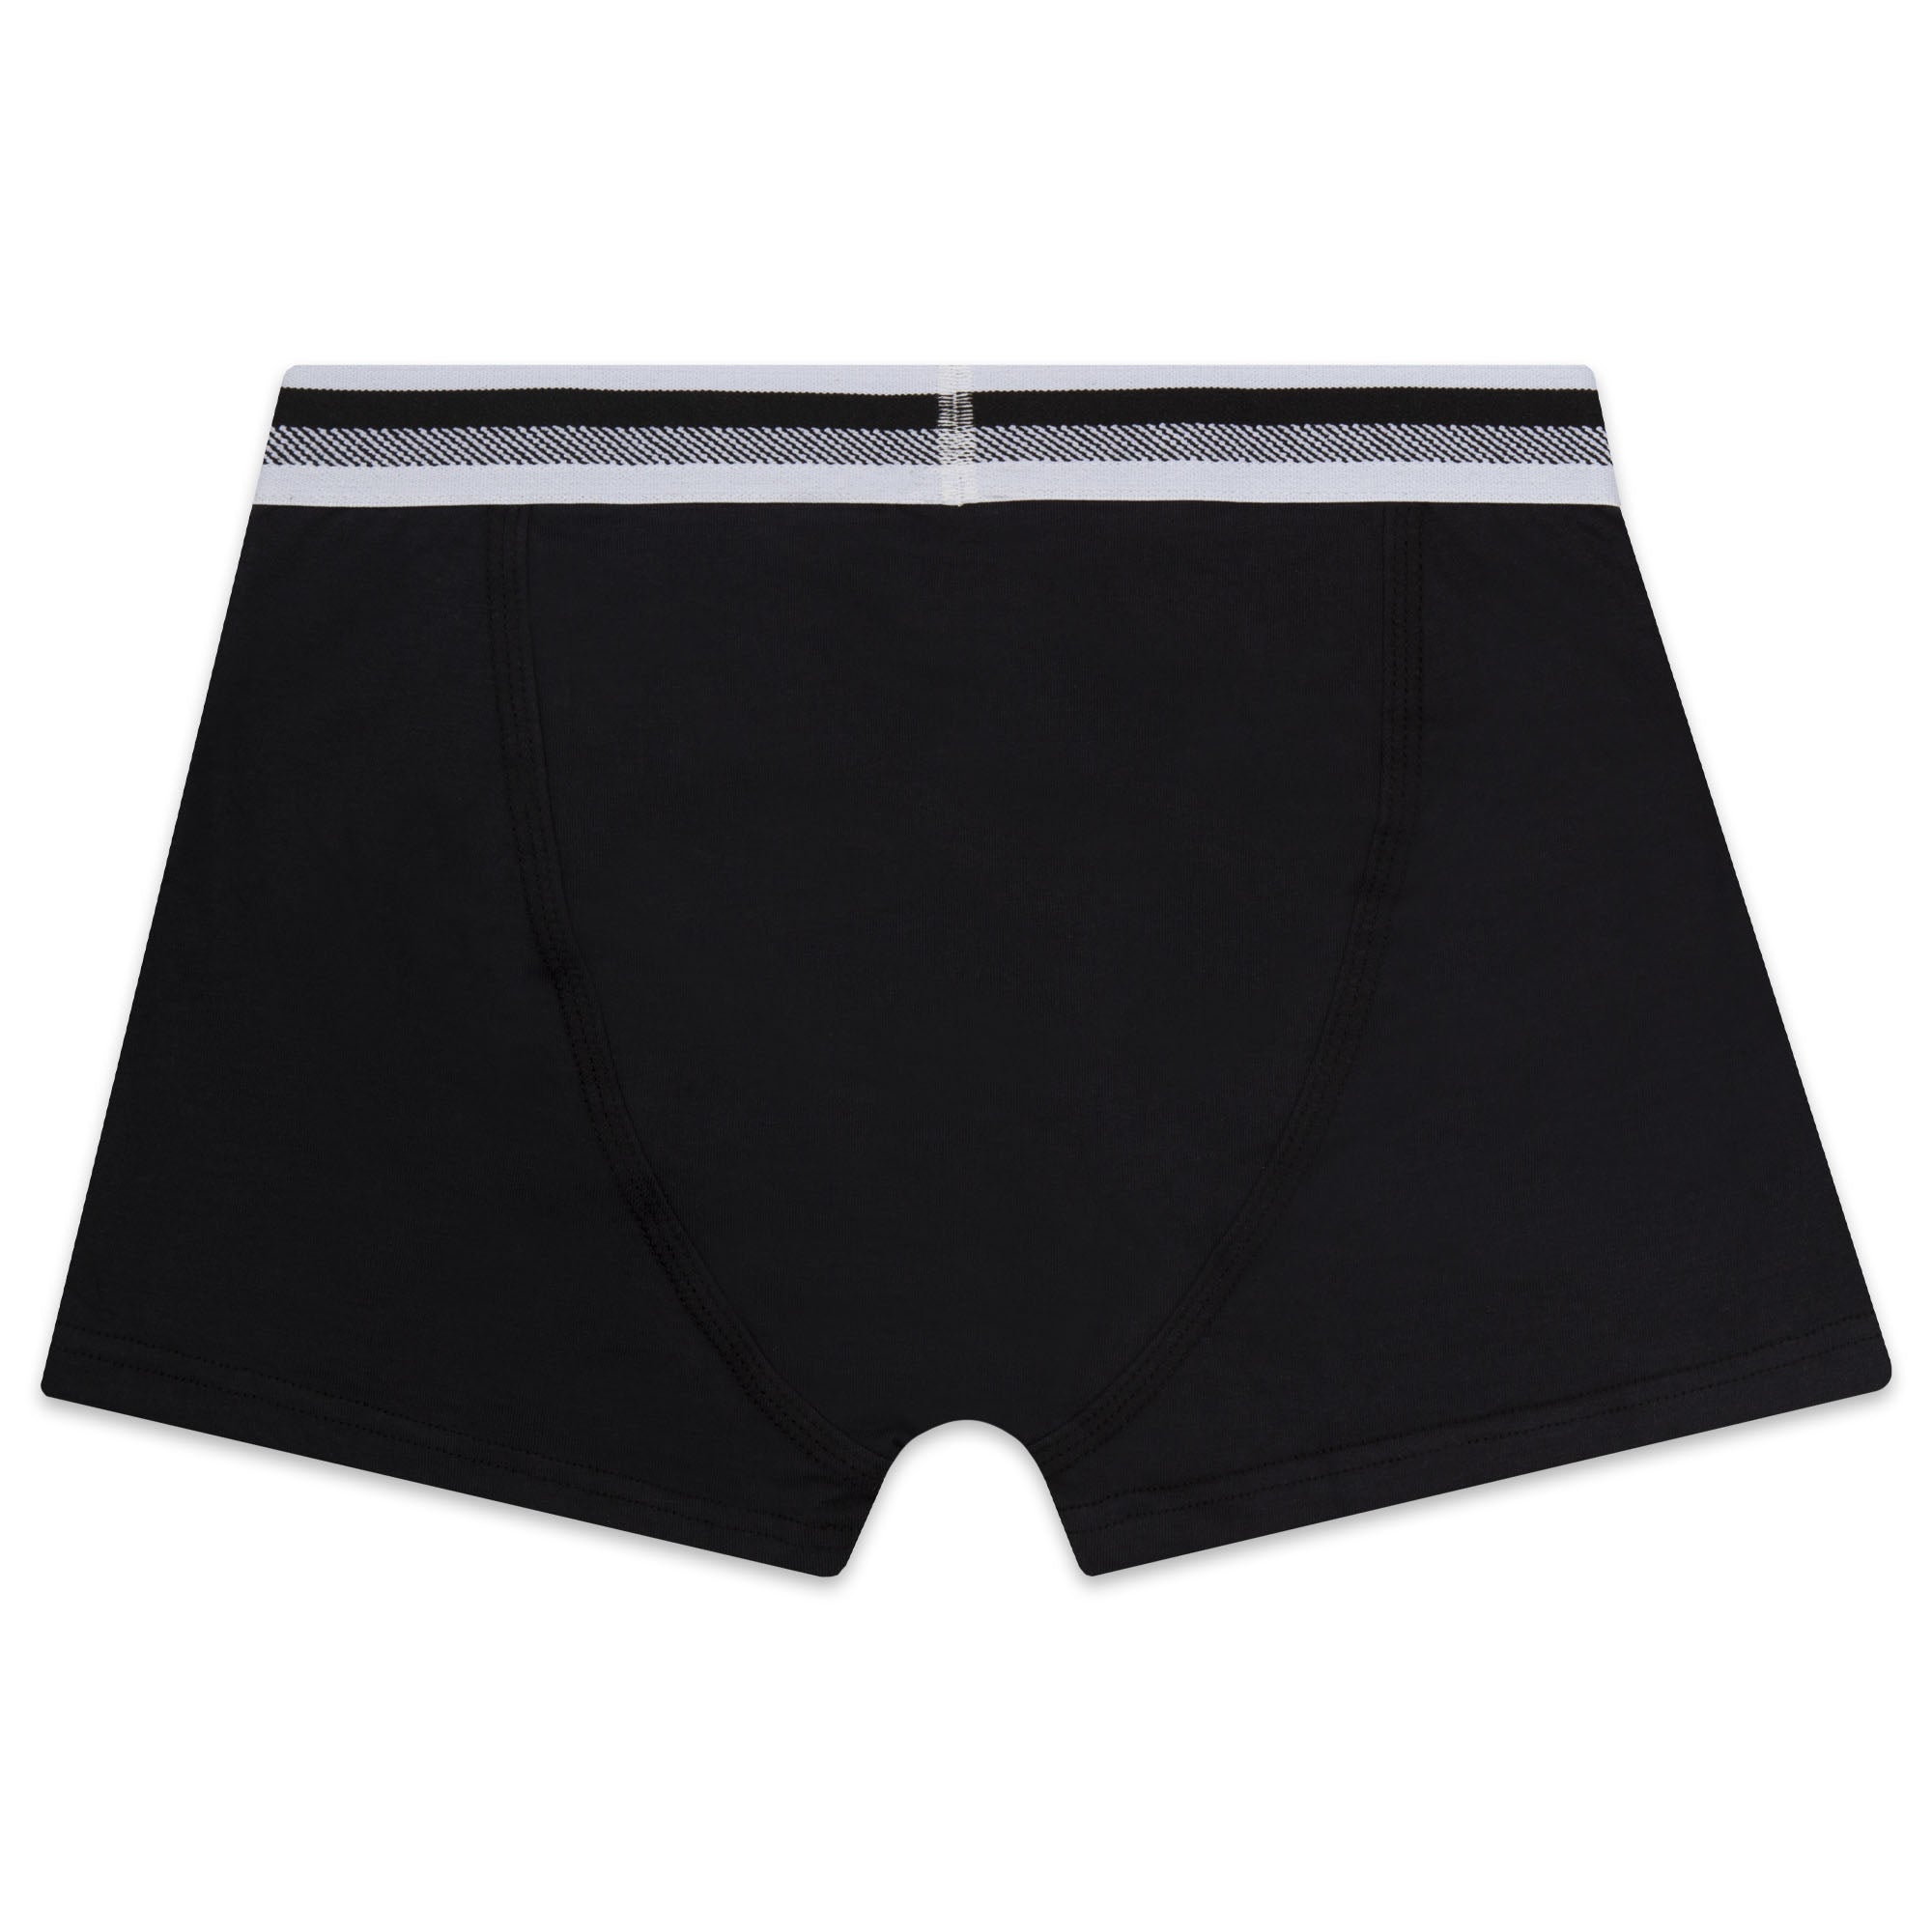 Boys Black Cotton Underwear Set (2 Pack)